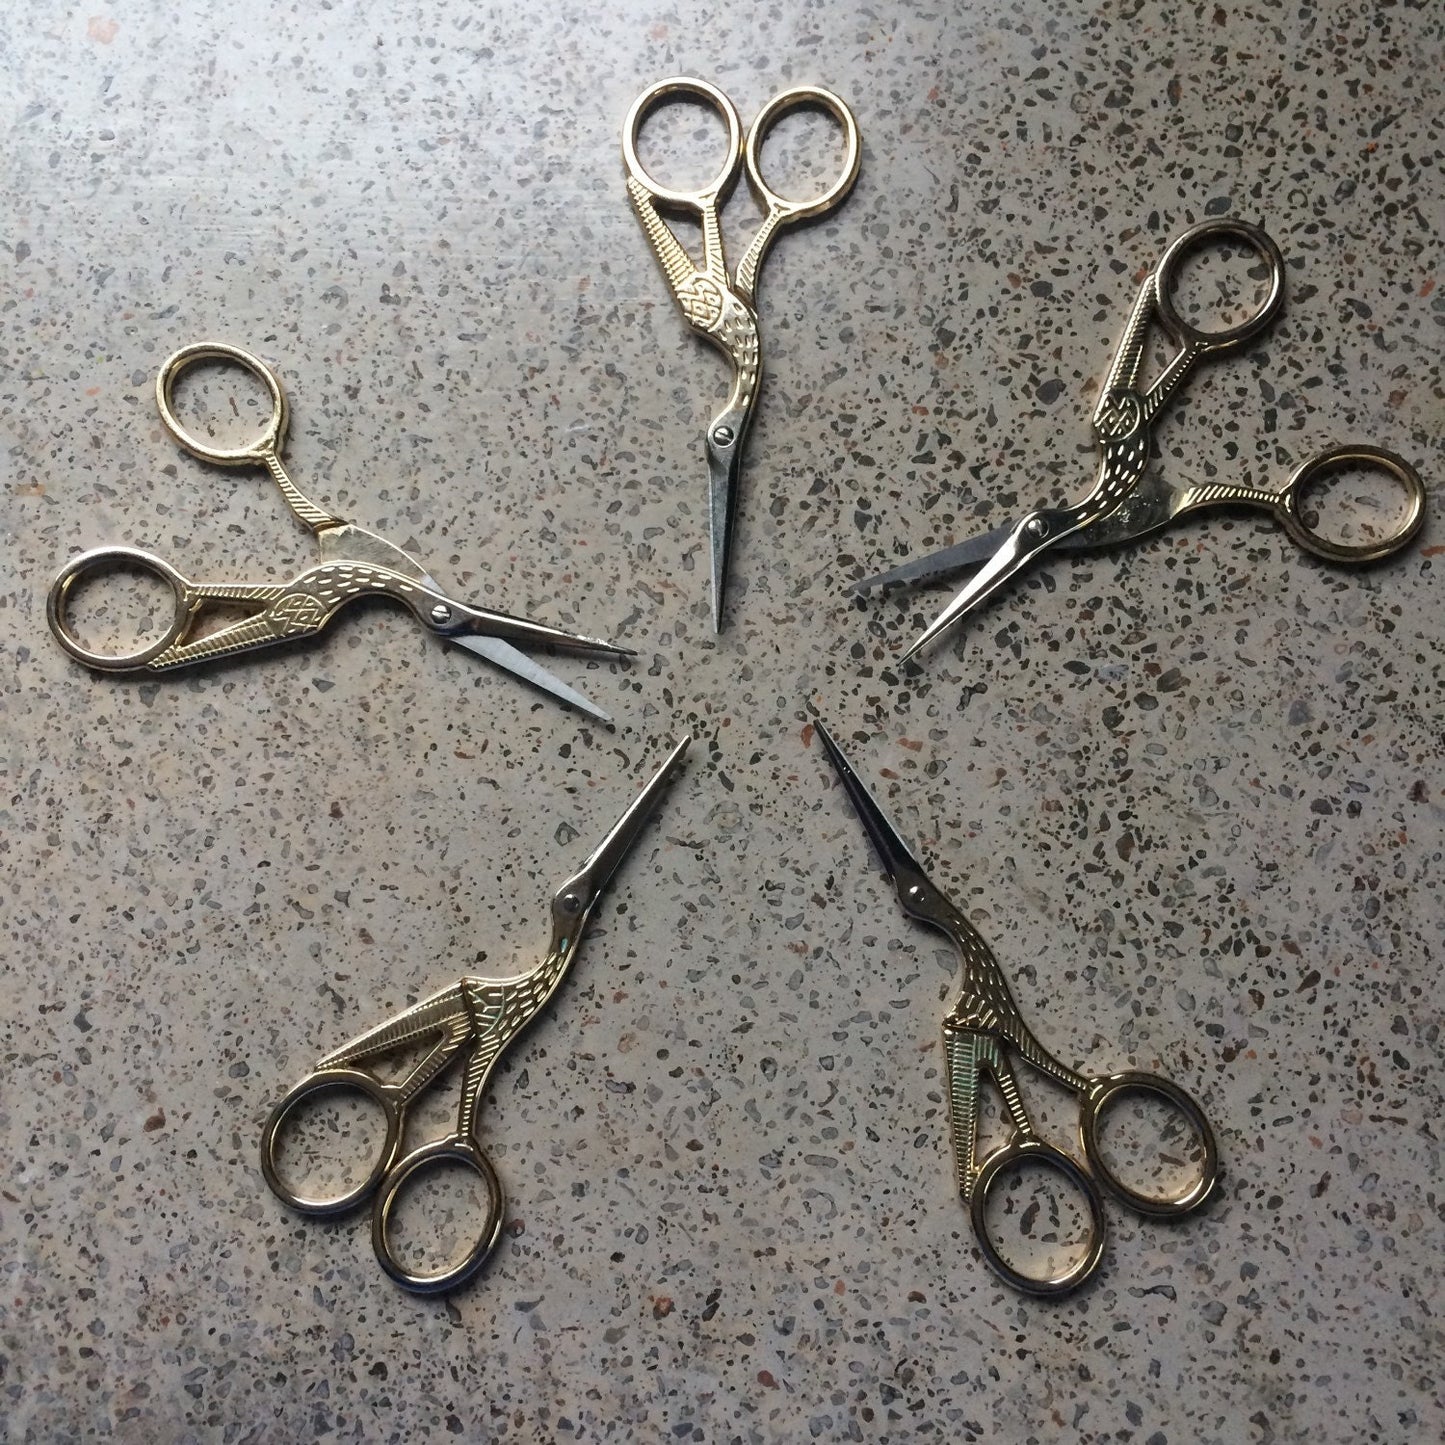 Crane Scissors